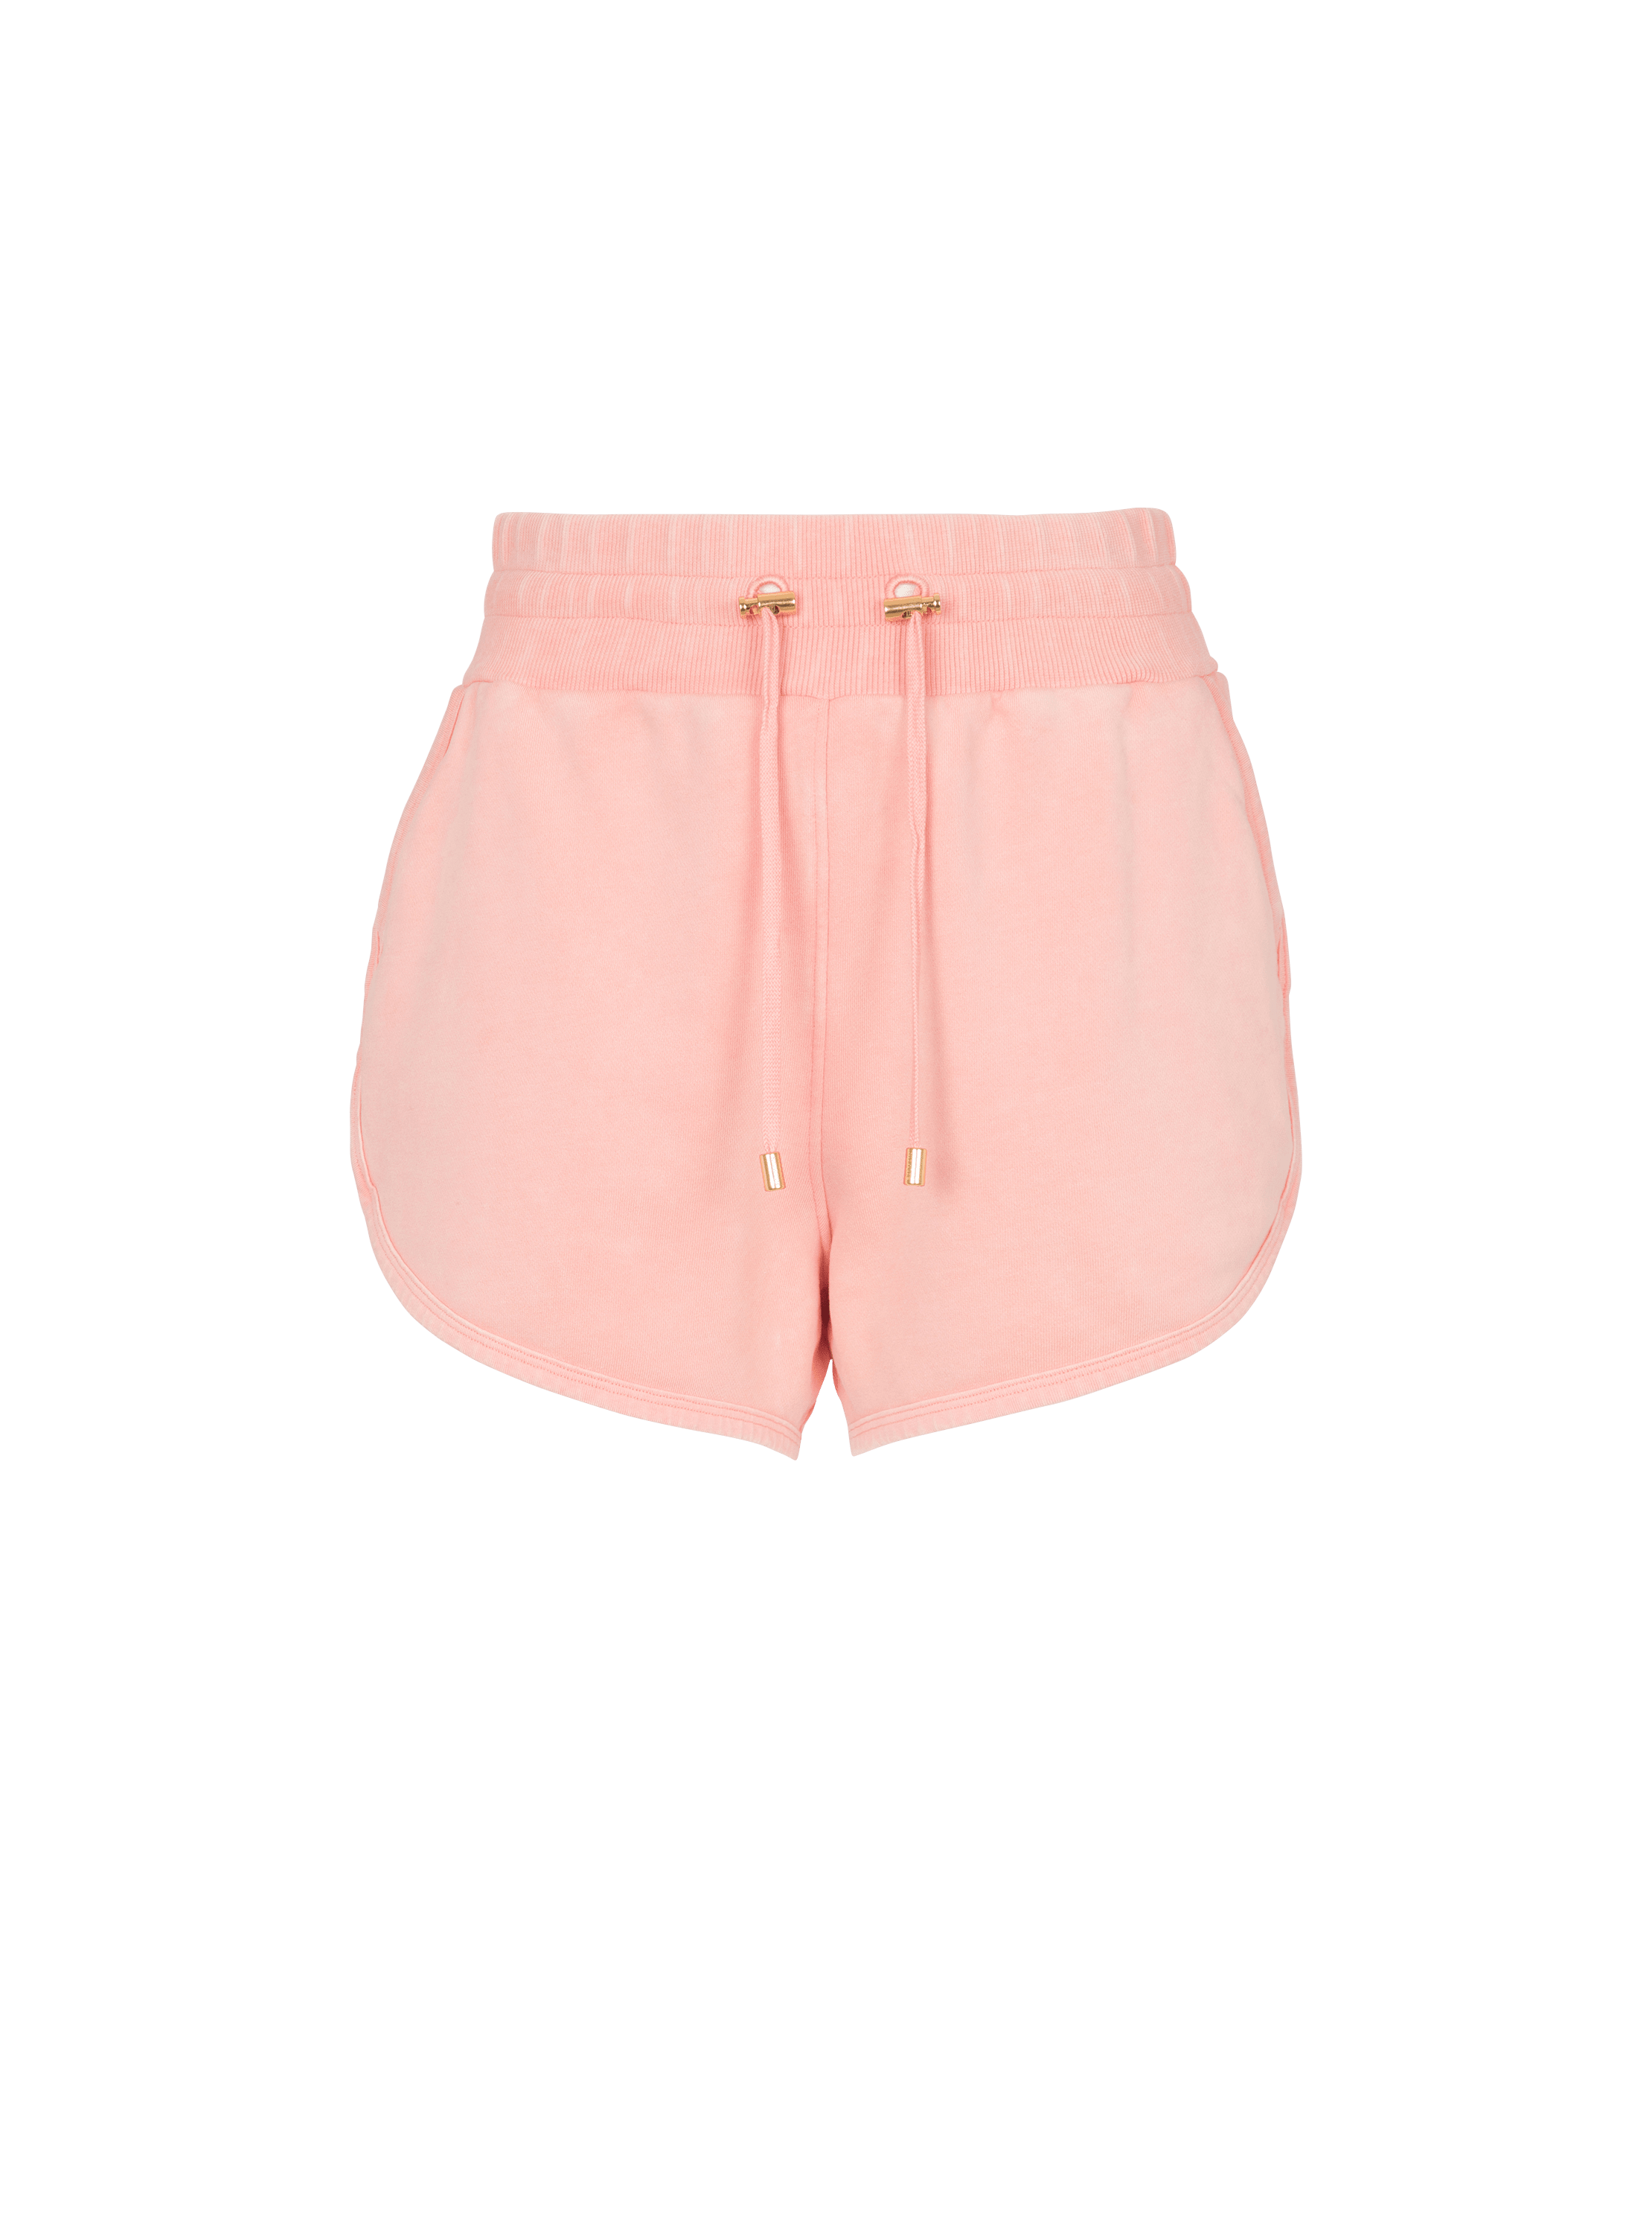 Shorts con bordado Balmain Vintage